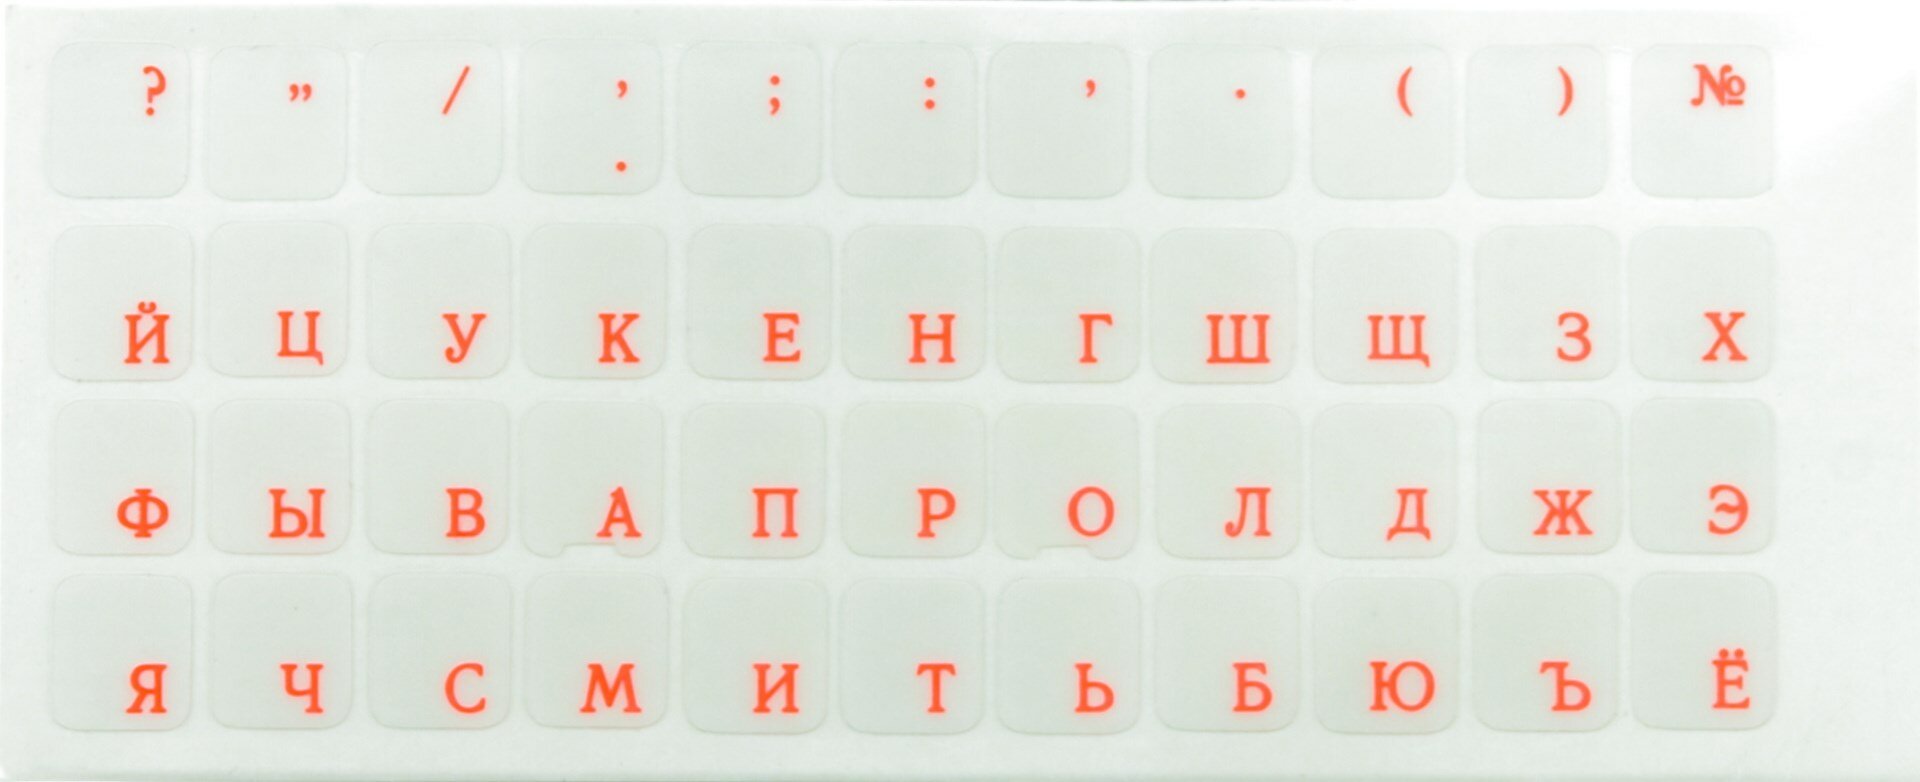 Наклейки на клавиатуру нестираемые, матовые, рус, прозрачные, 11х13 мм, ярко-красные